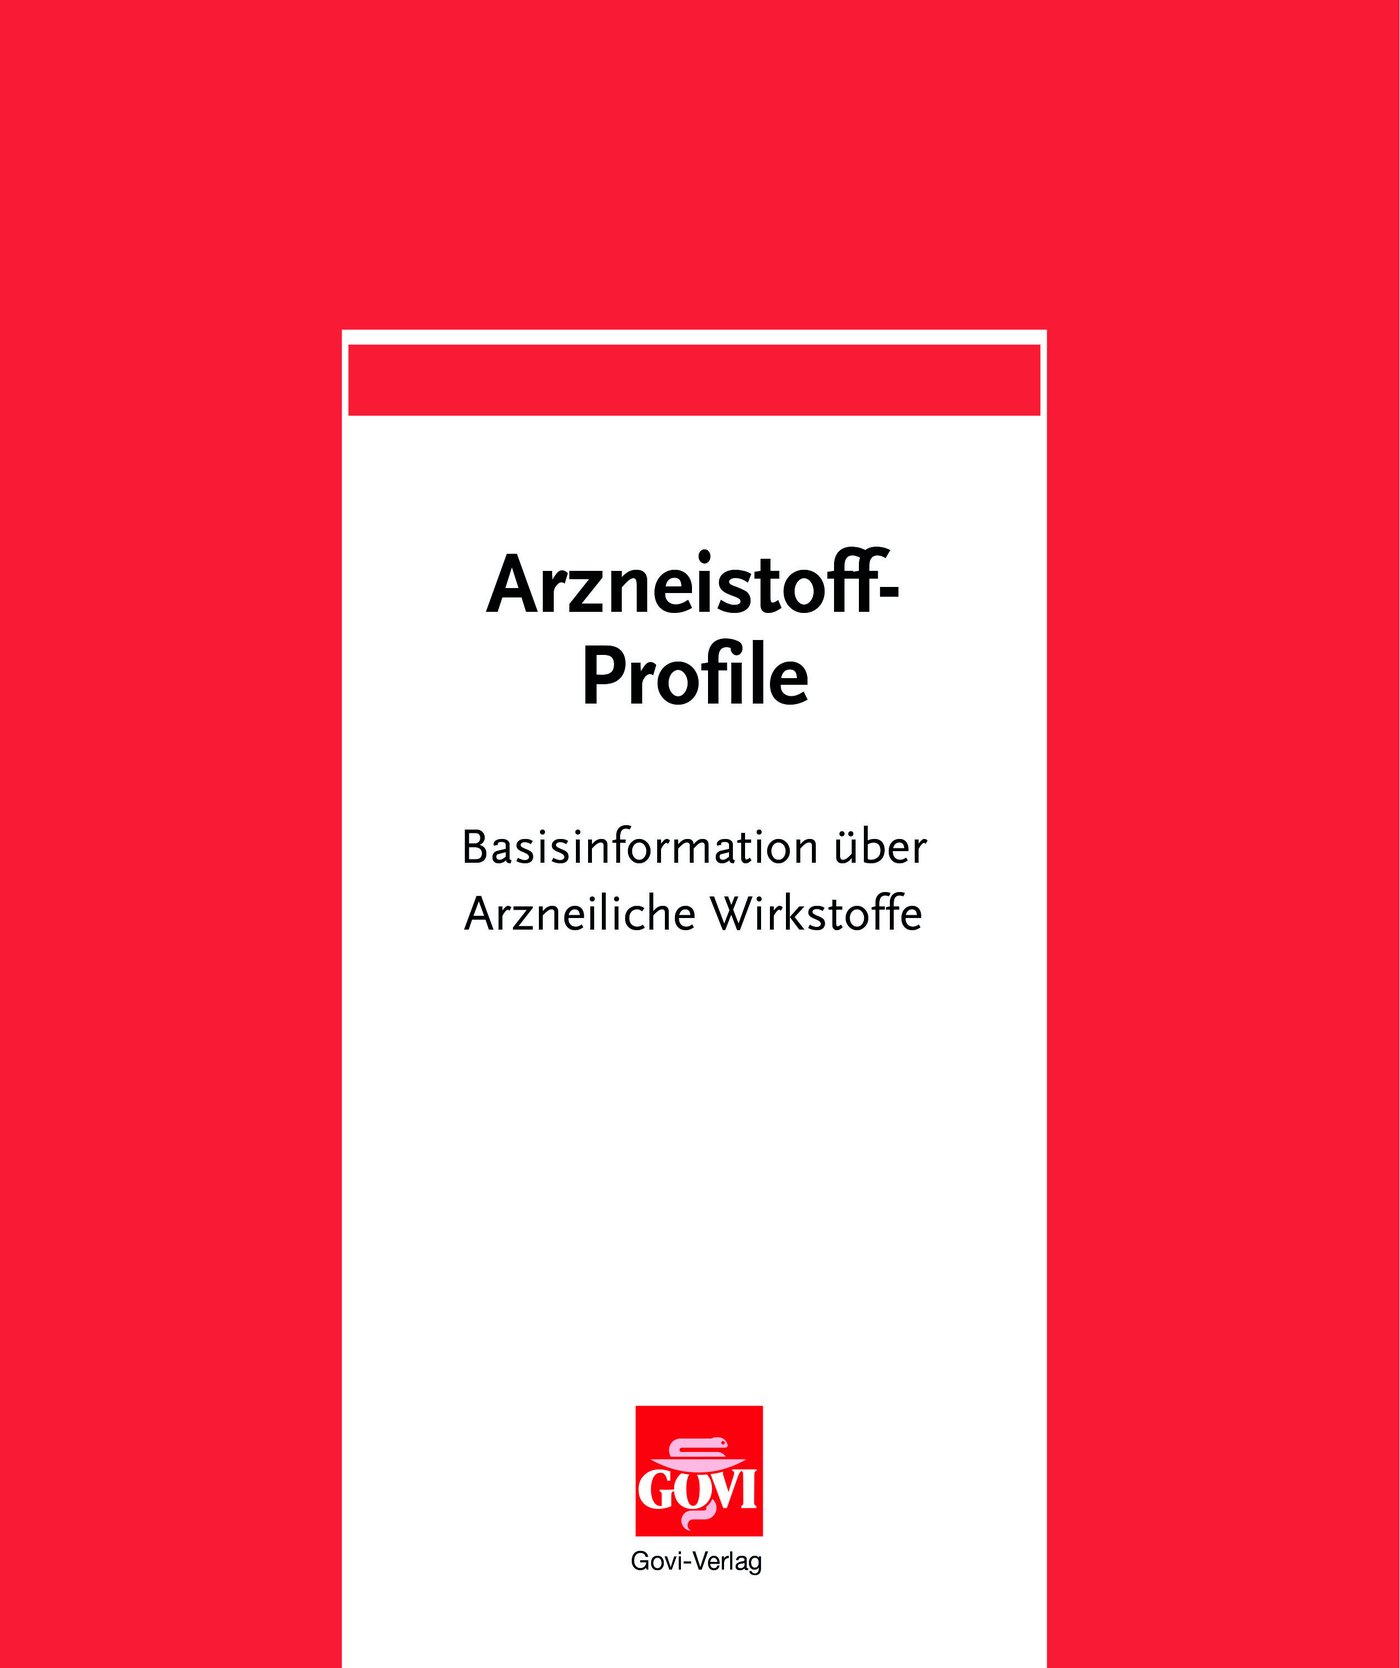 Arzneistoff-Profile